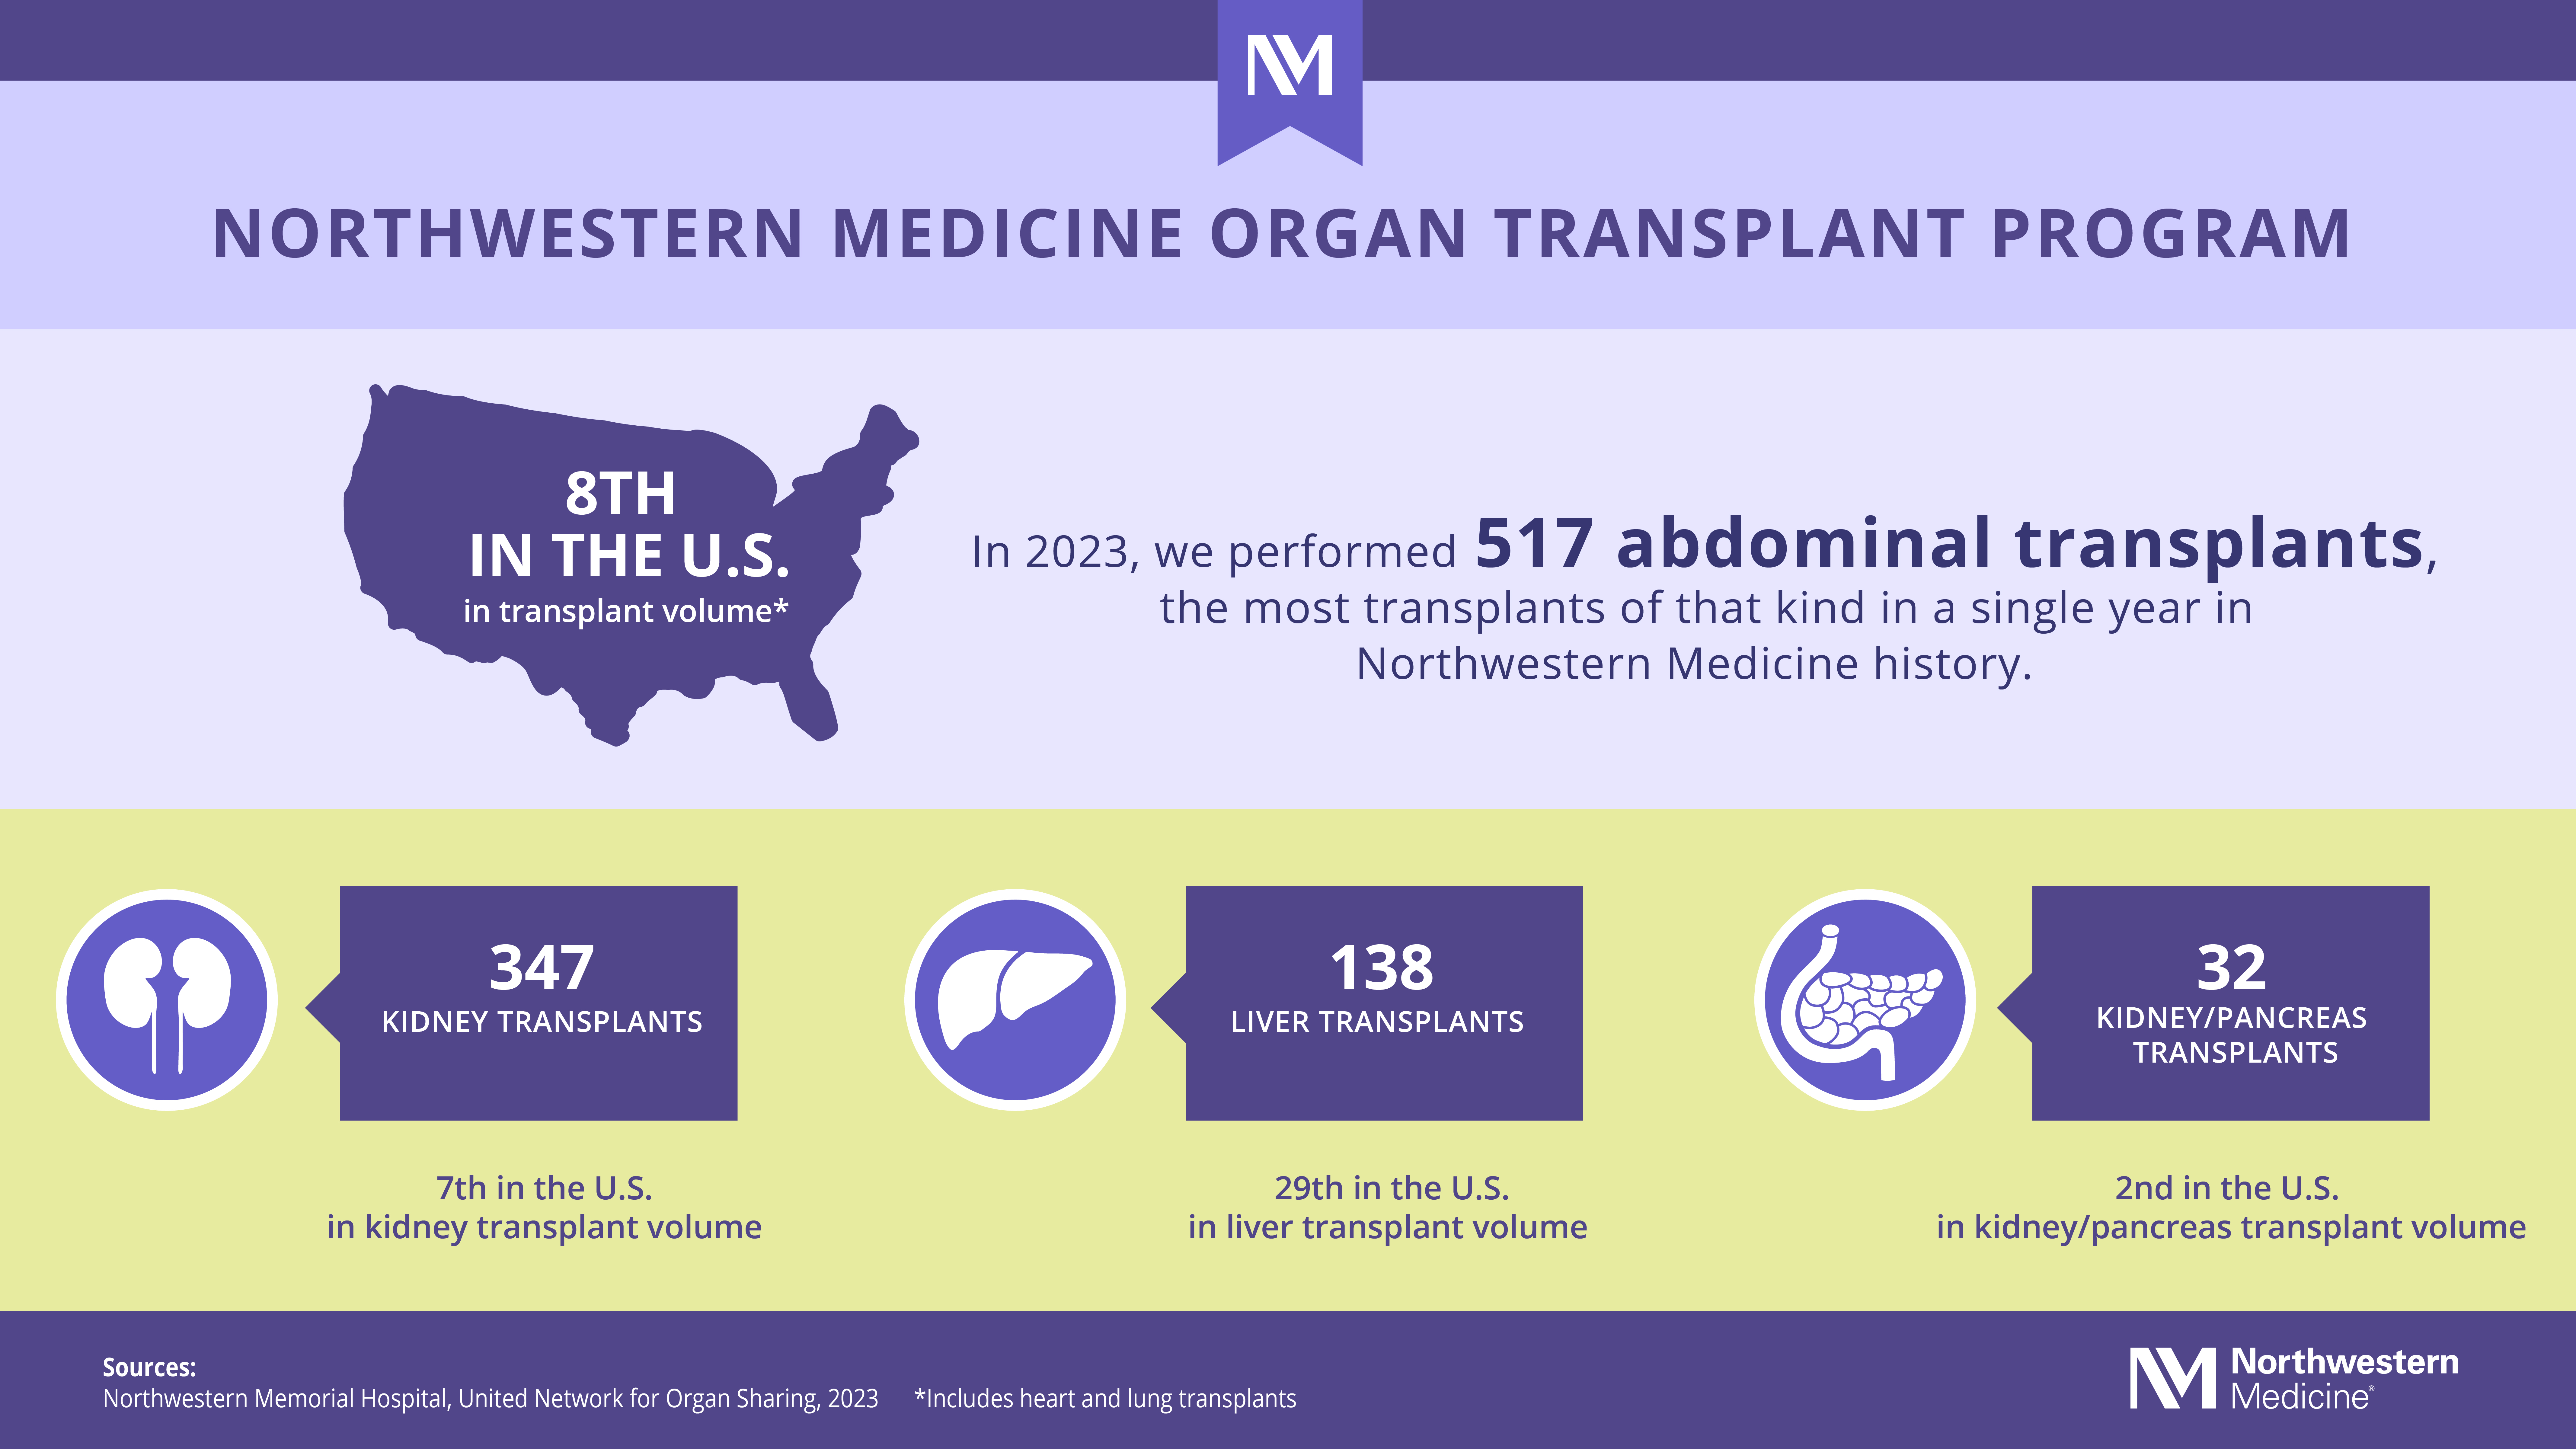 Image of Organ Transplantation Statistics: 517 abdominal transplants, 347 kidney transplants, 138 liver transplants, 32 kidney/pancreas transplants